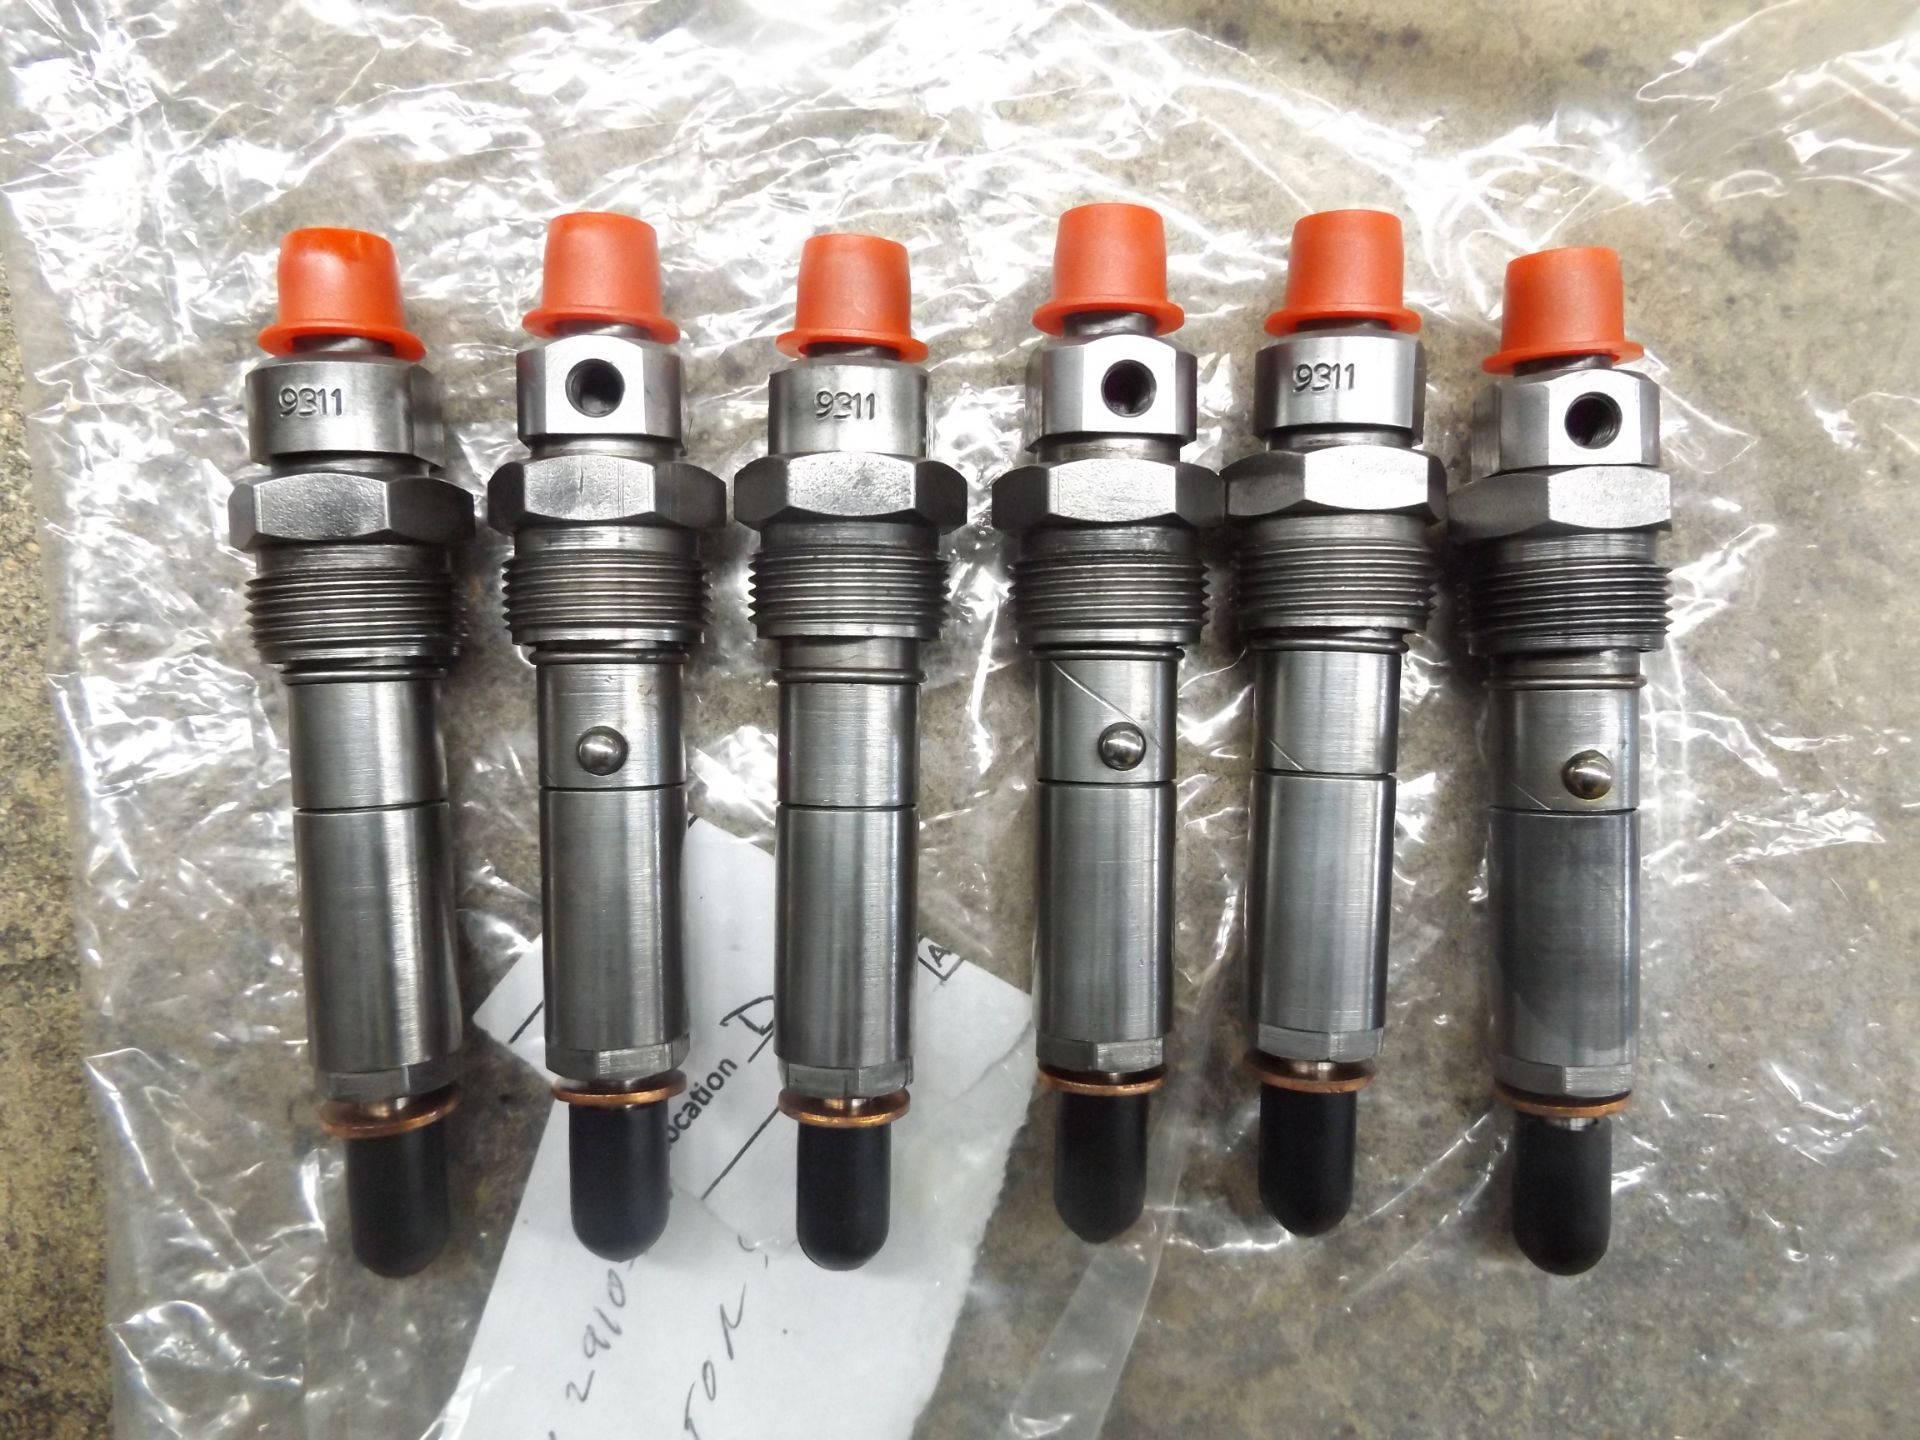 6 x DAF CBU1365 Injectors